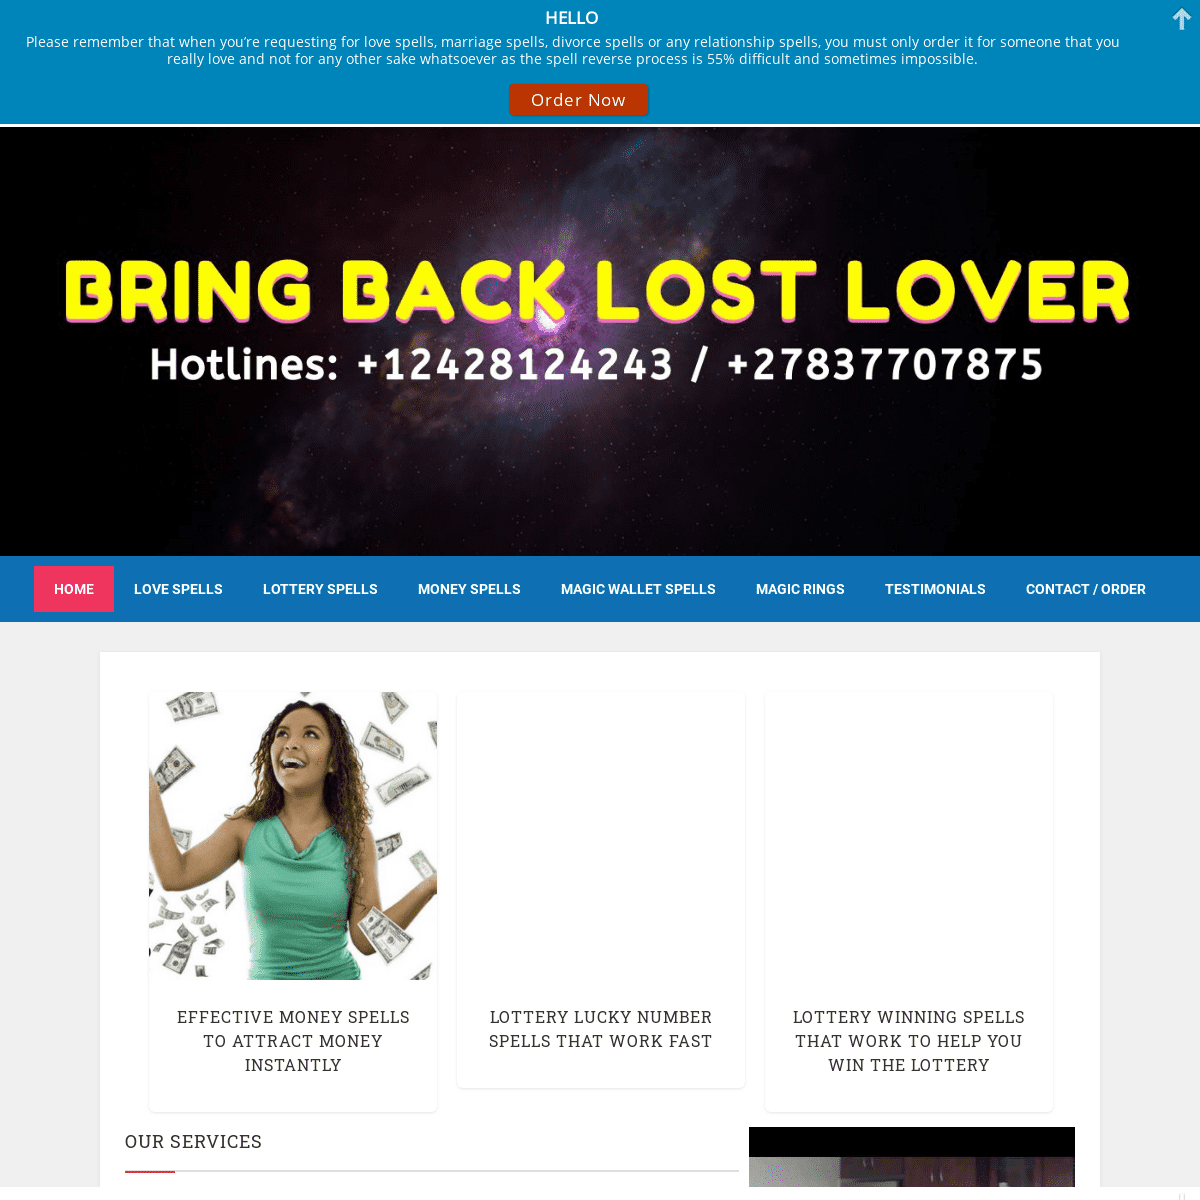 A complete backup of bringbacklostlover.com